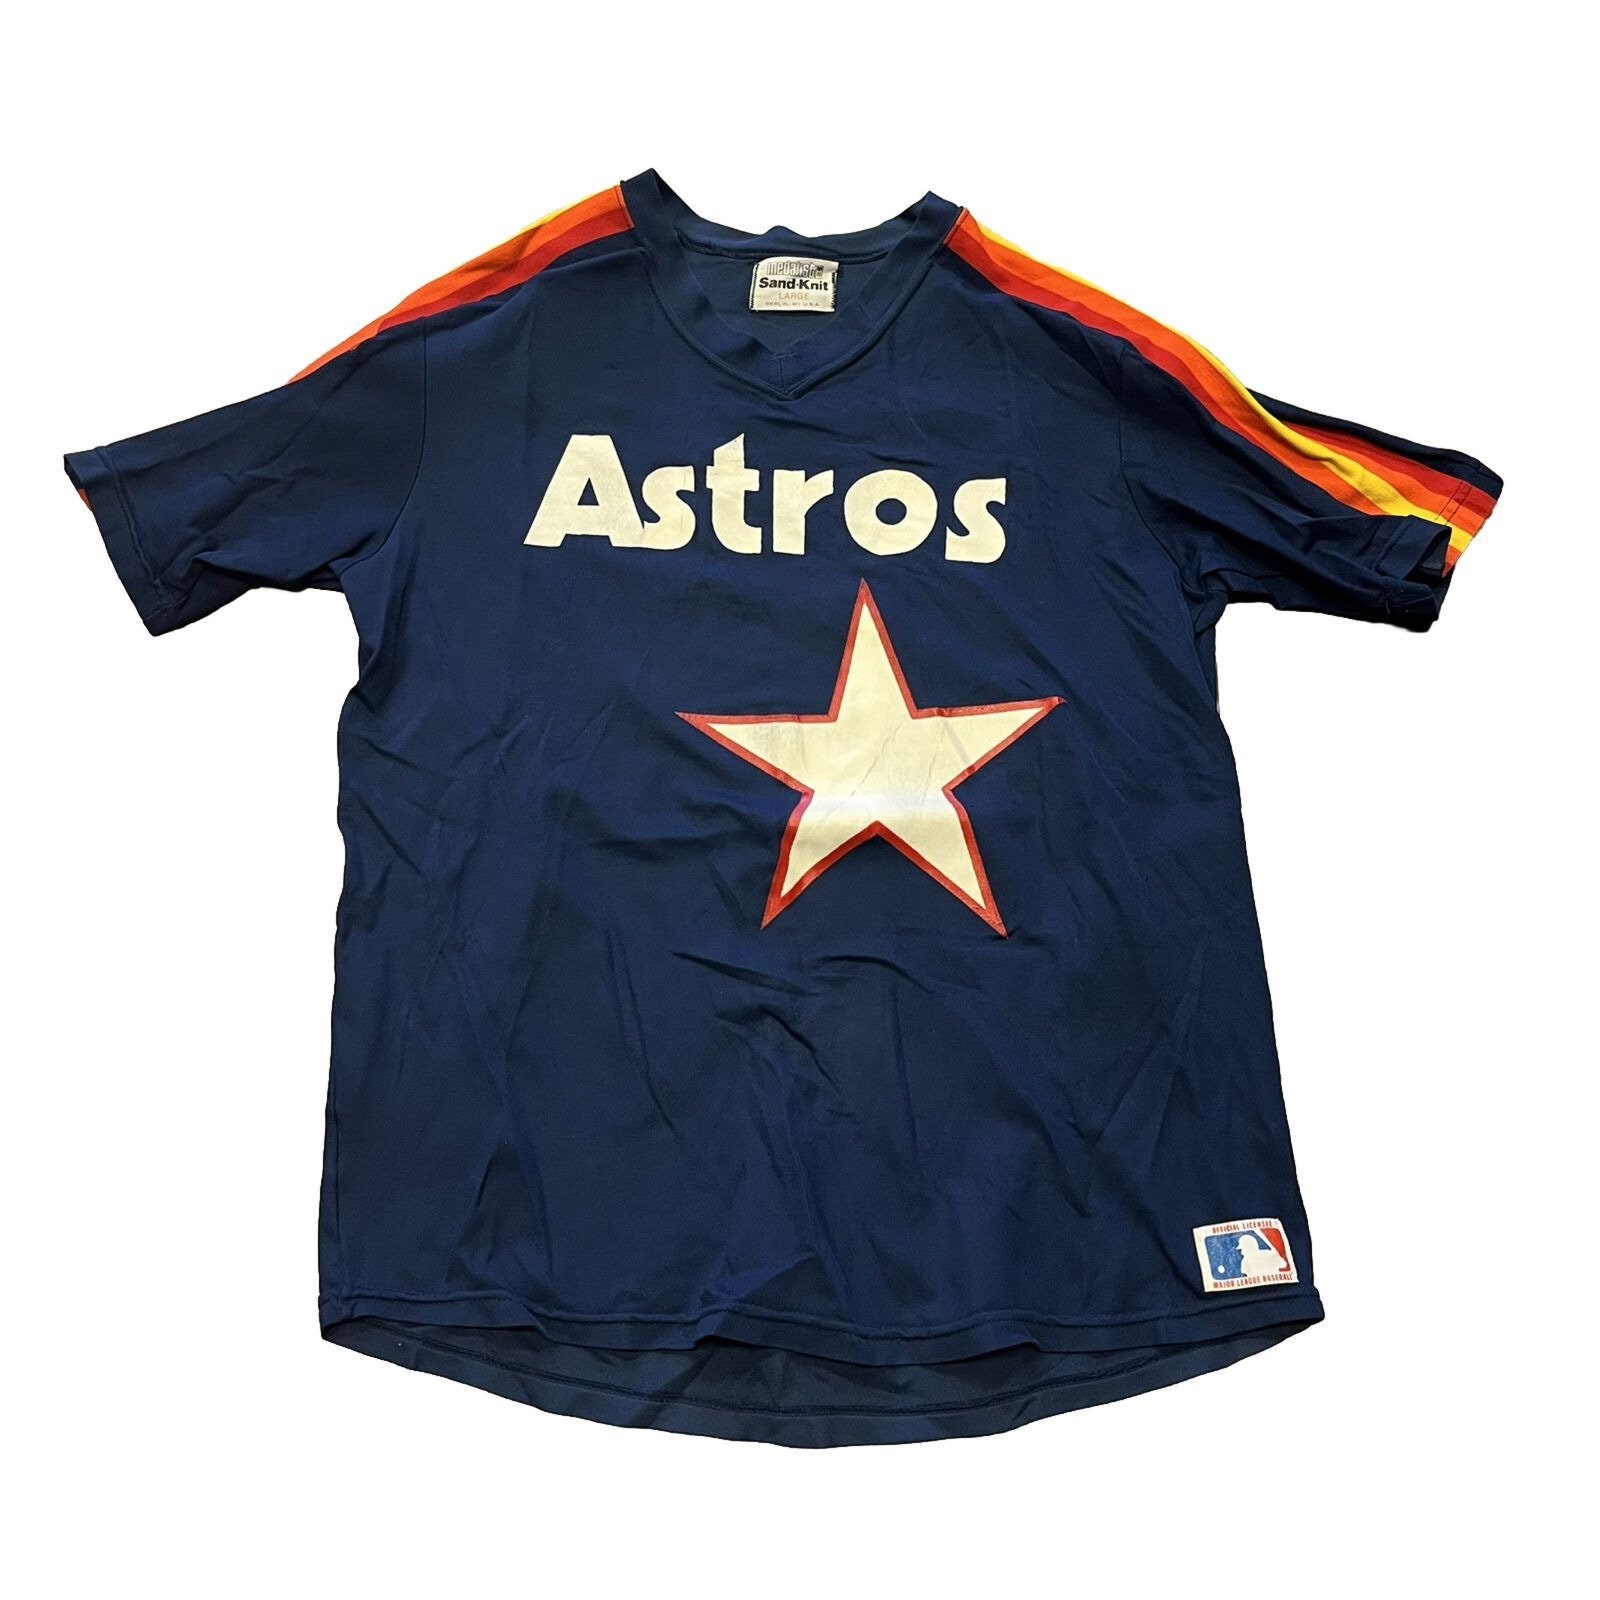 Pro Knit, Shirts, Vtg 7s Pro Knit Houston Astros Baseball Jersey